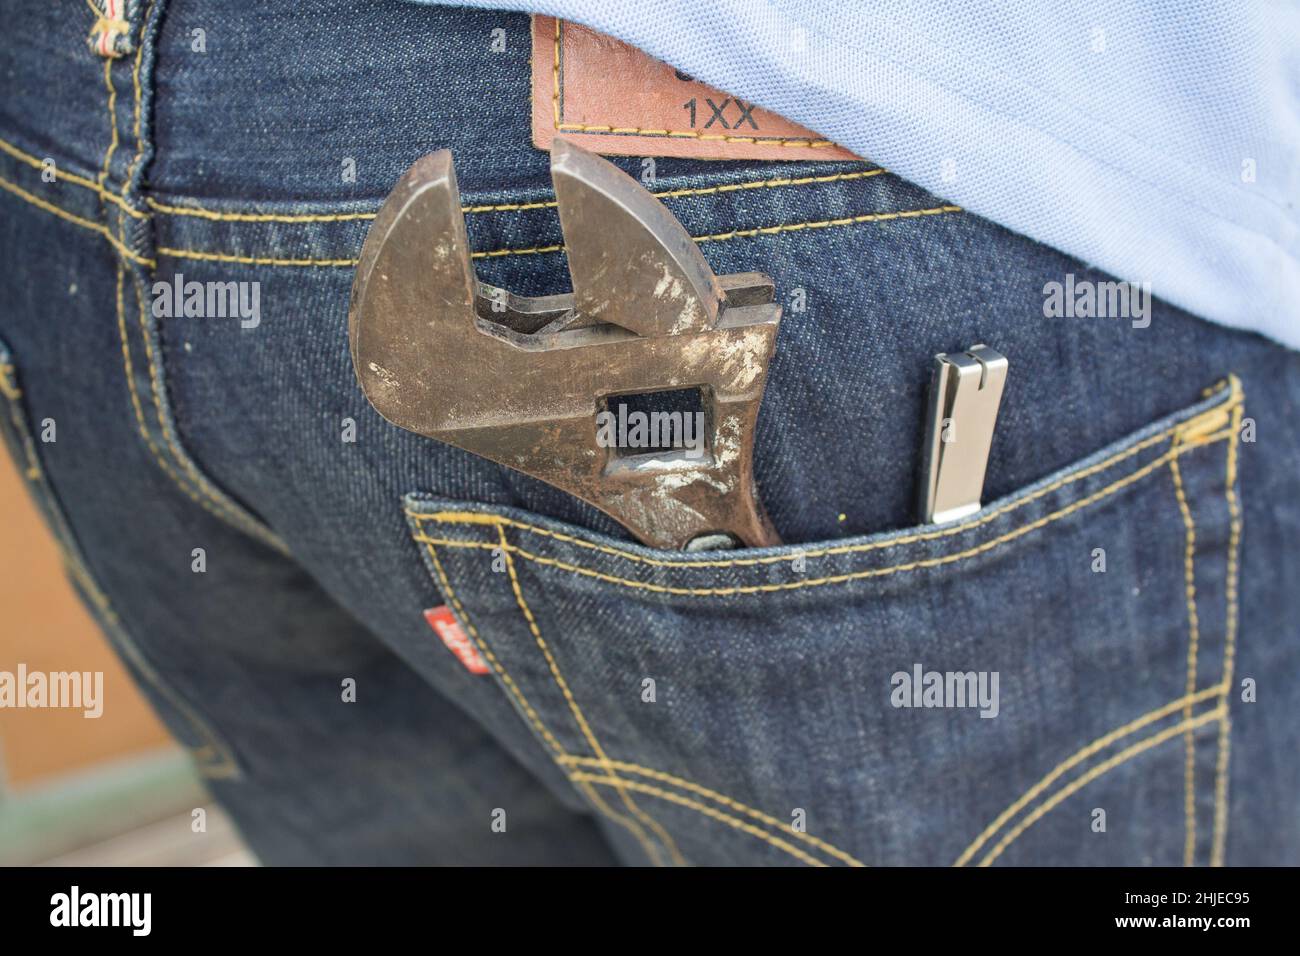 Chiave nella tasca posteriore dei jeans. Chiavi grandi e piccole come simbolo di padre e figlio. Il giorno dei padri sfondo con il dad- chiave e il figlio - chiave. HAP Foto Stock